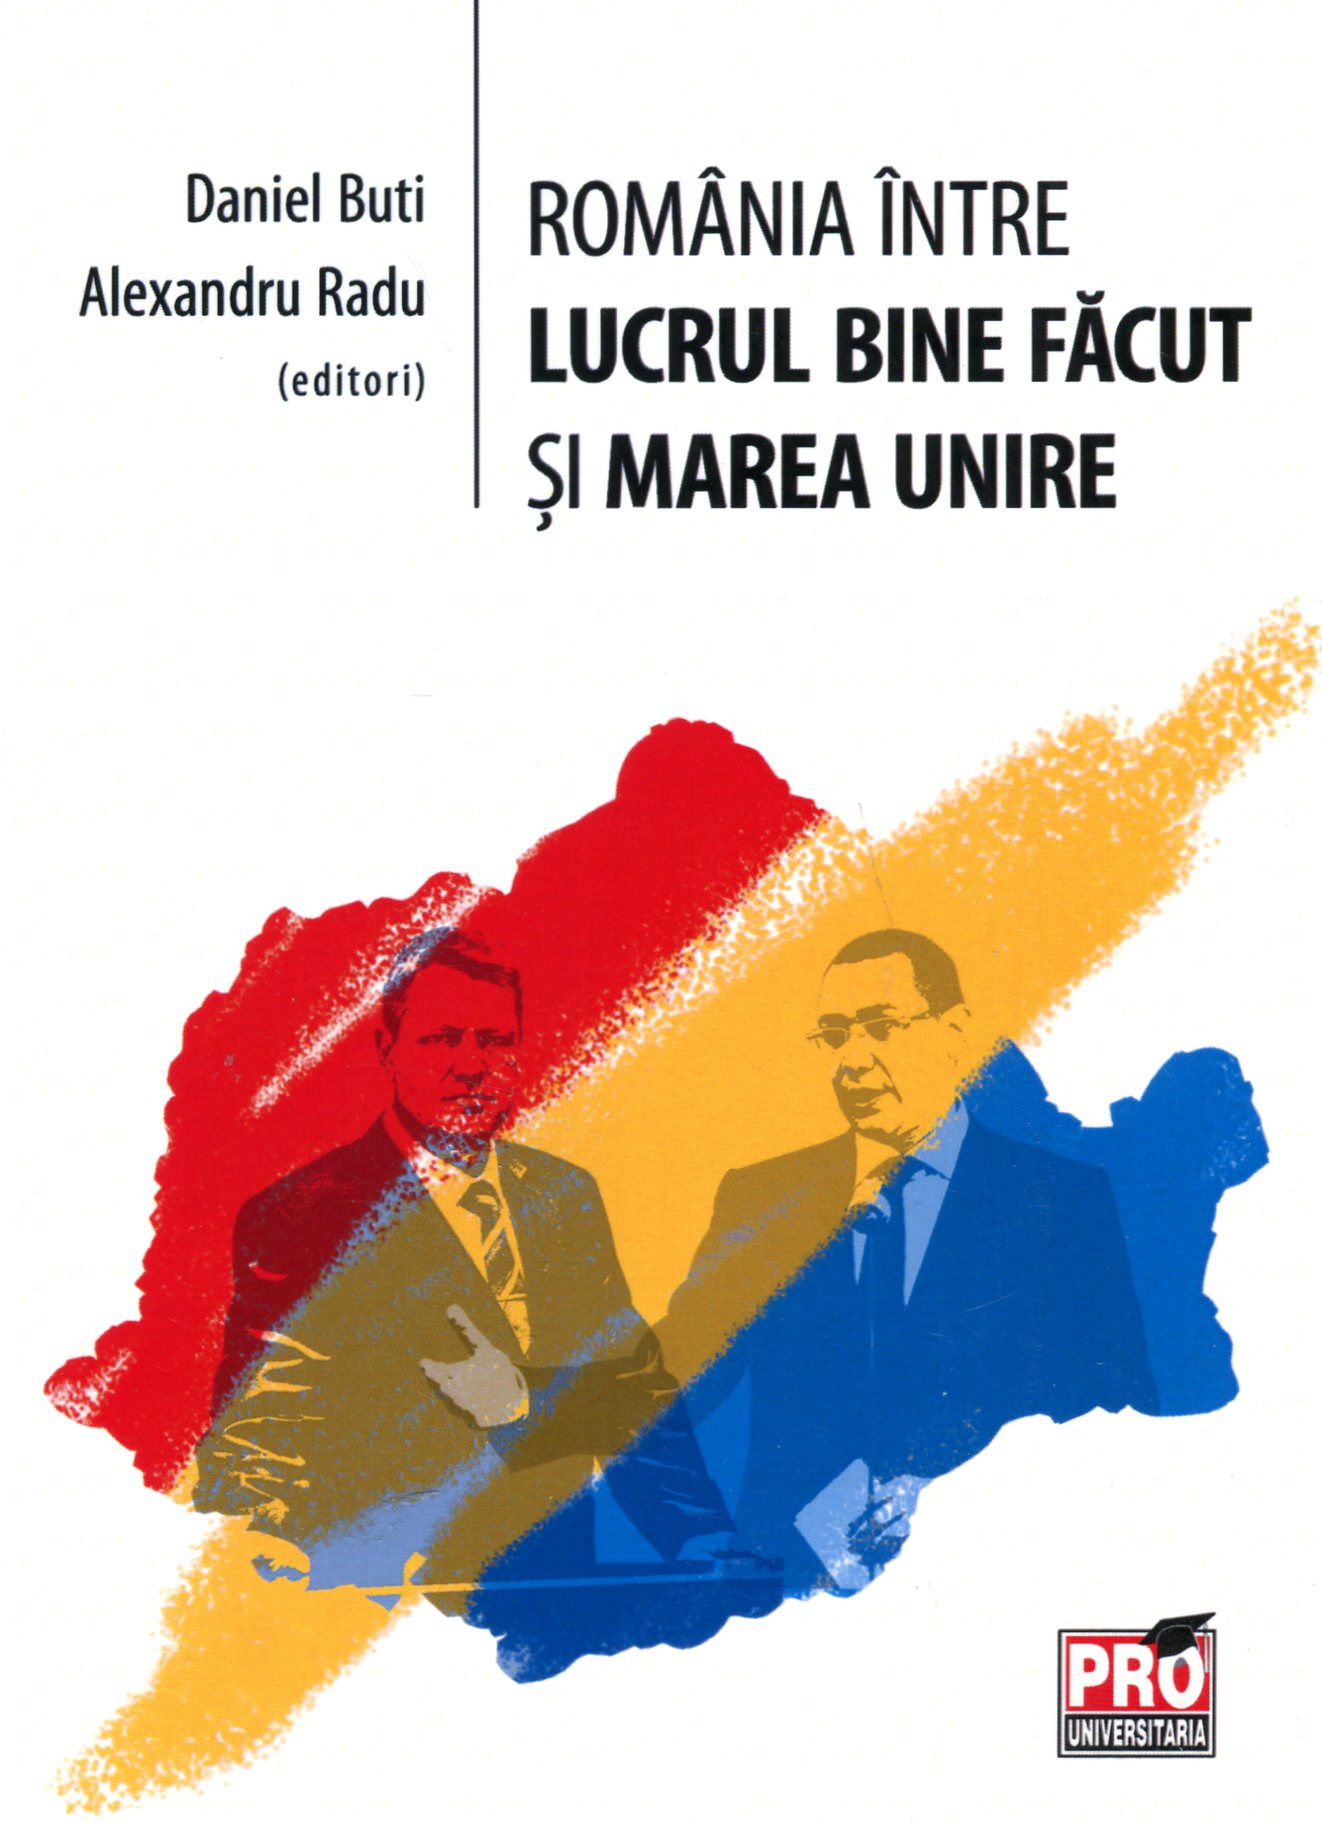 Romania Intre Lucrul Bine Facut Si Marea Unire - Daniel Buti, Alexandru Radu